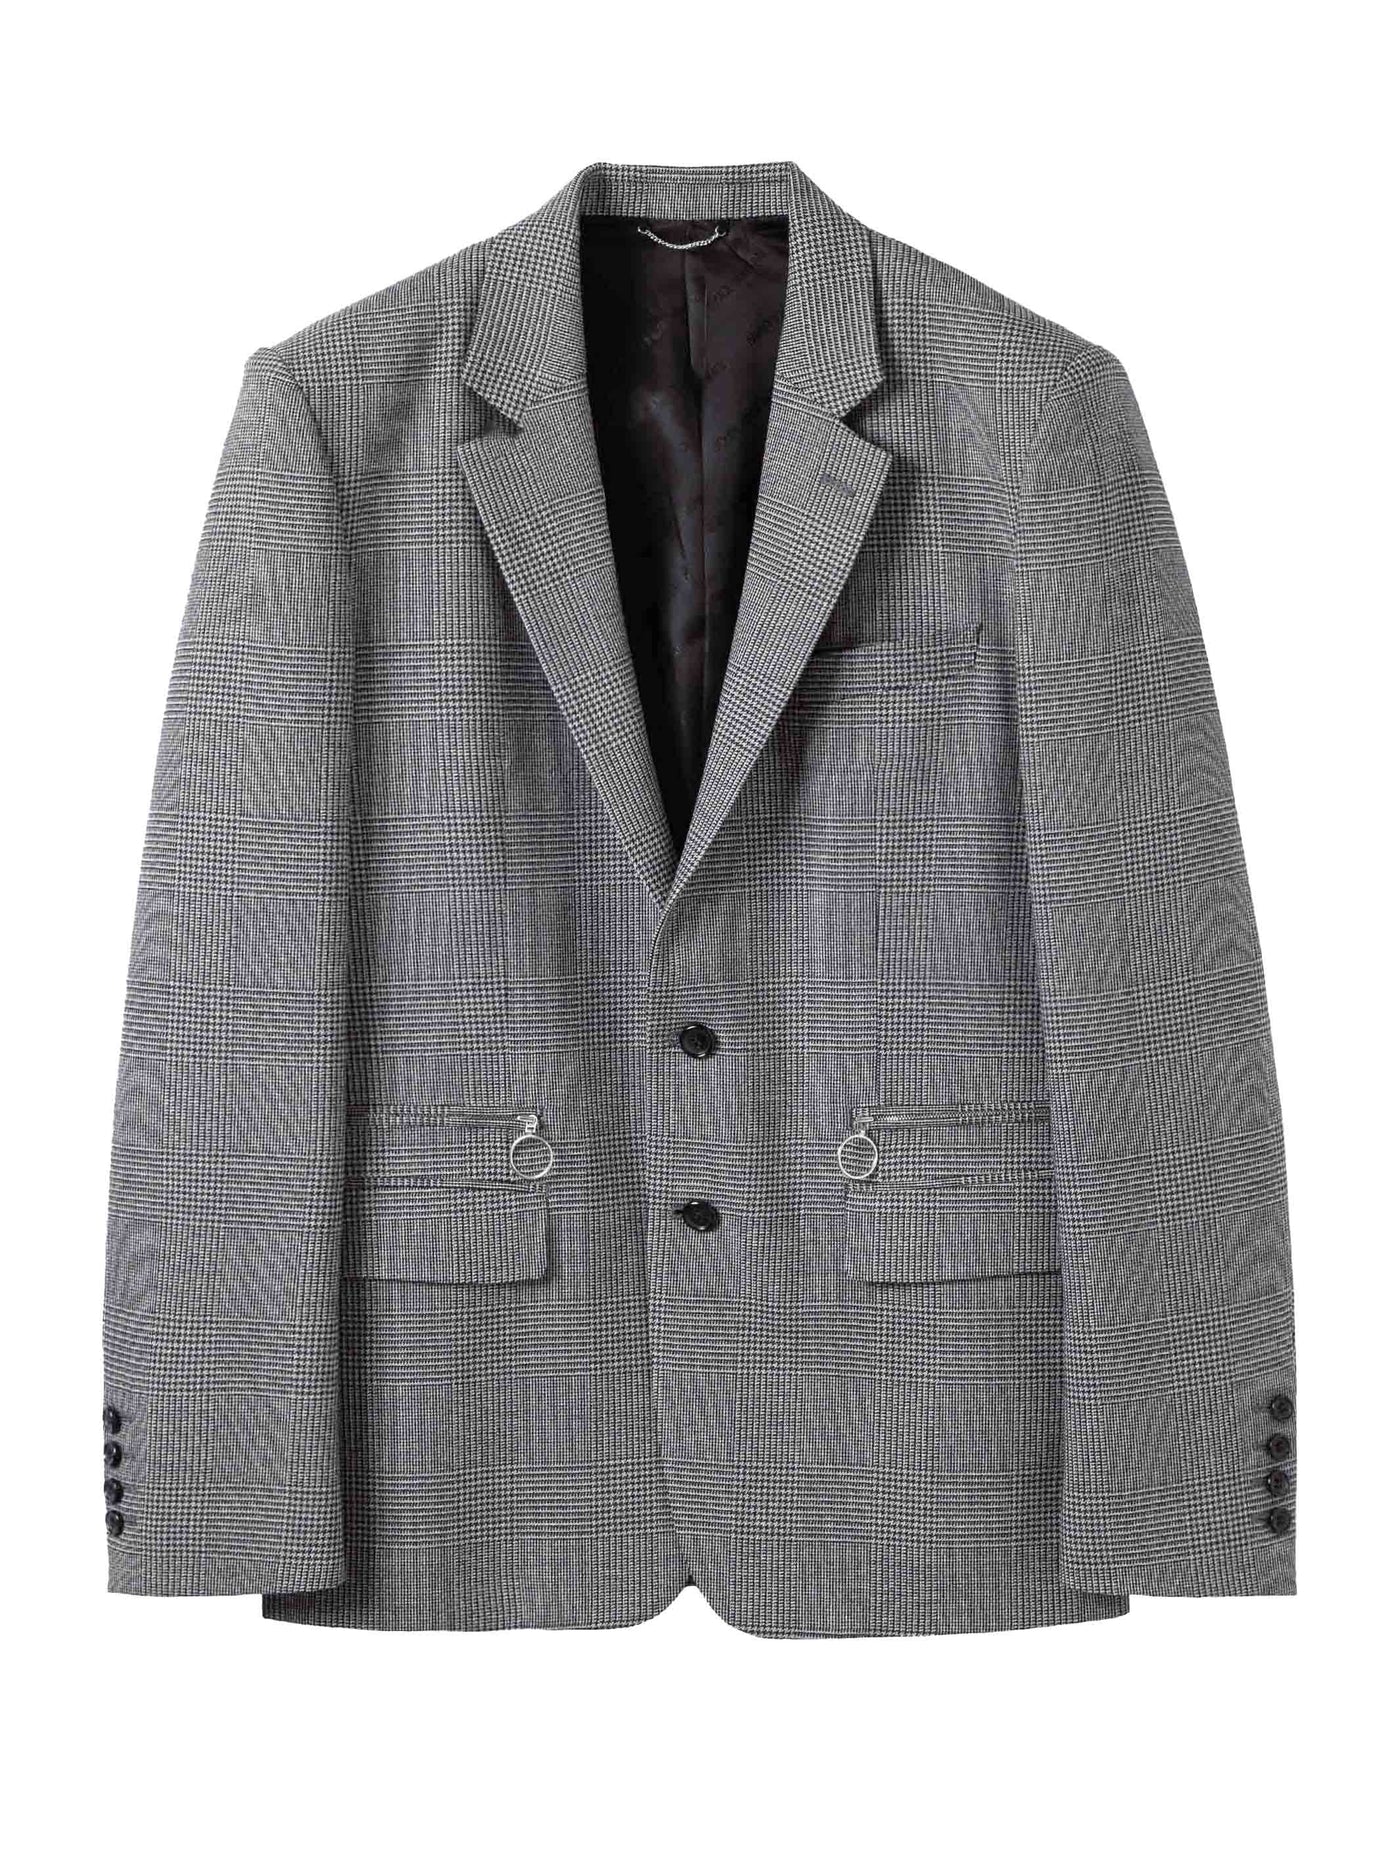 Wool check single jacket